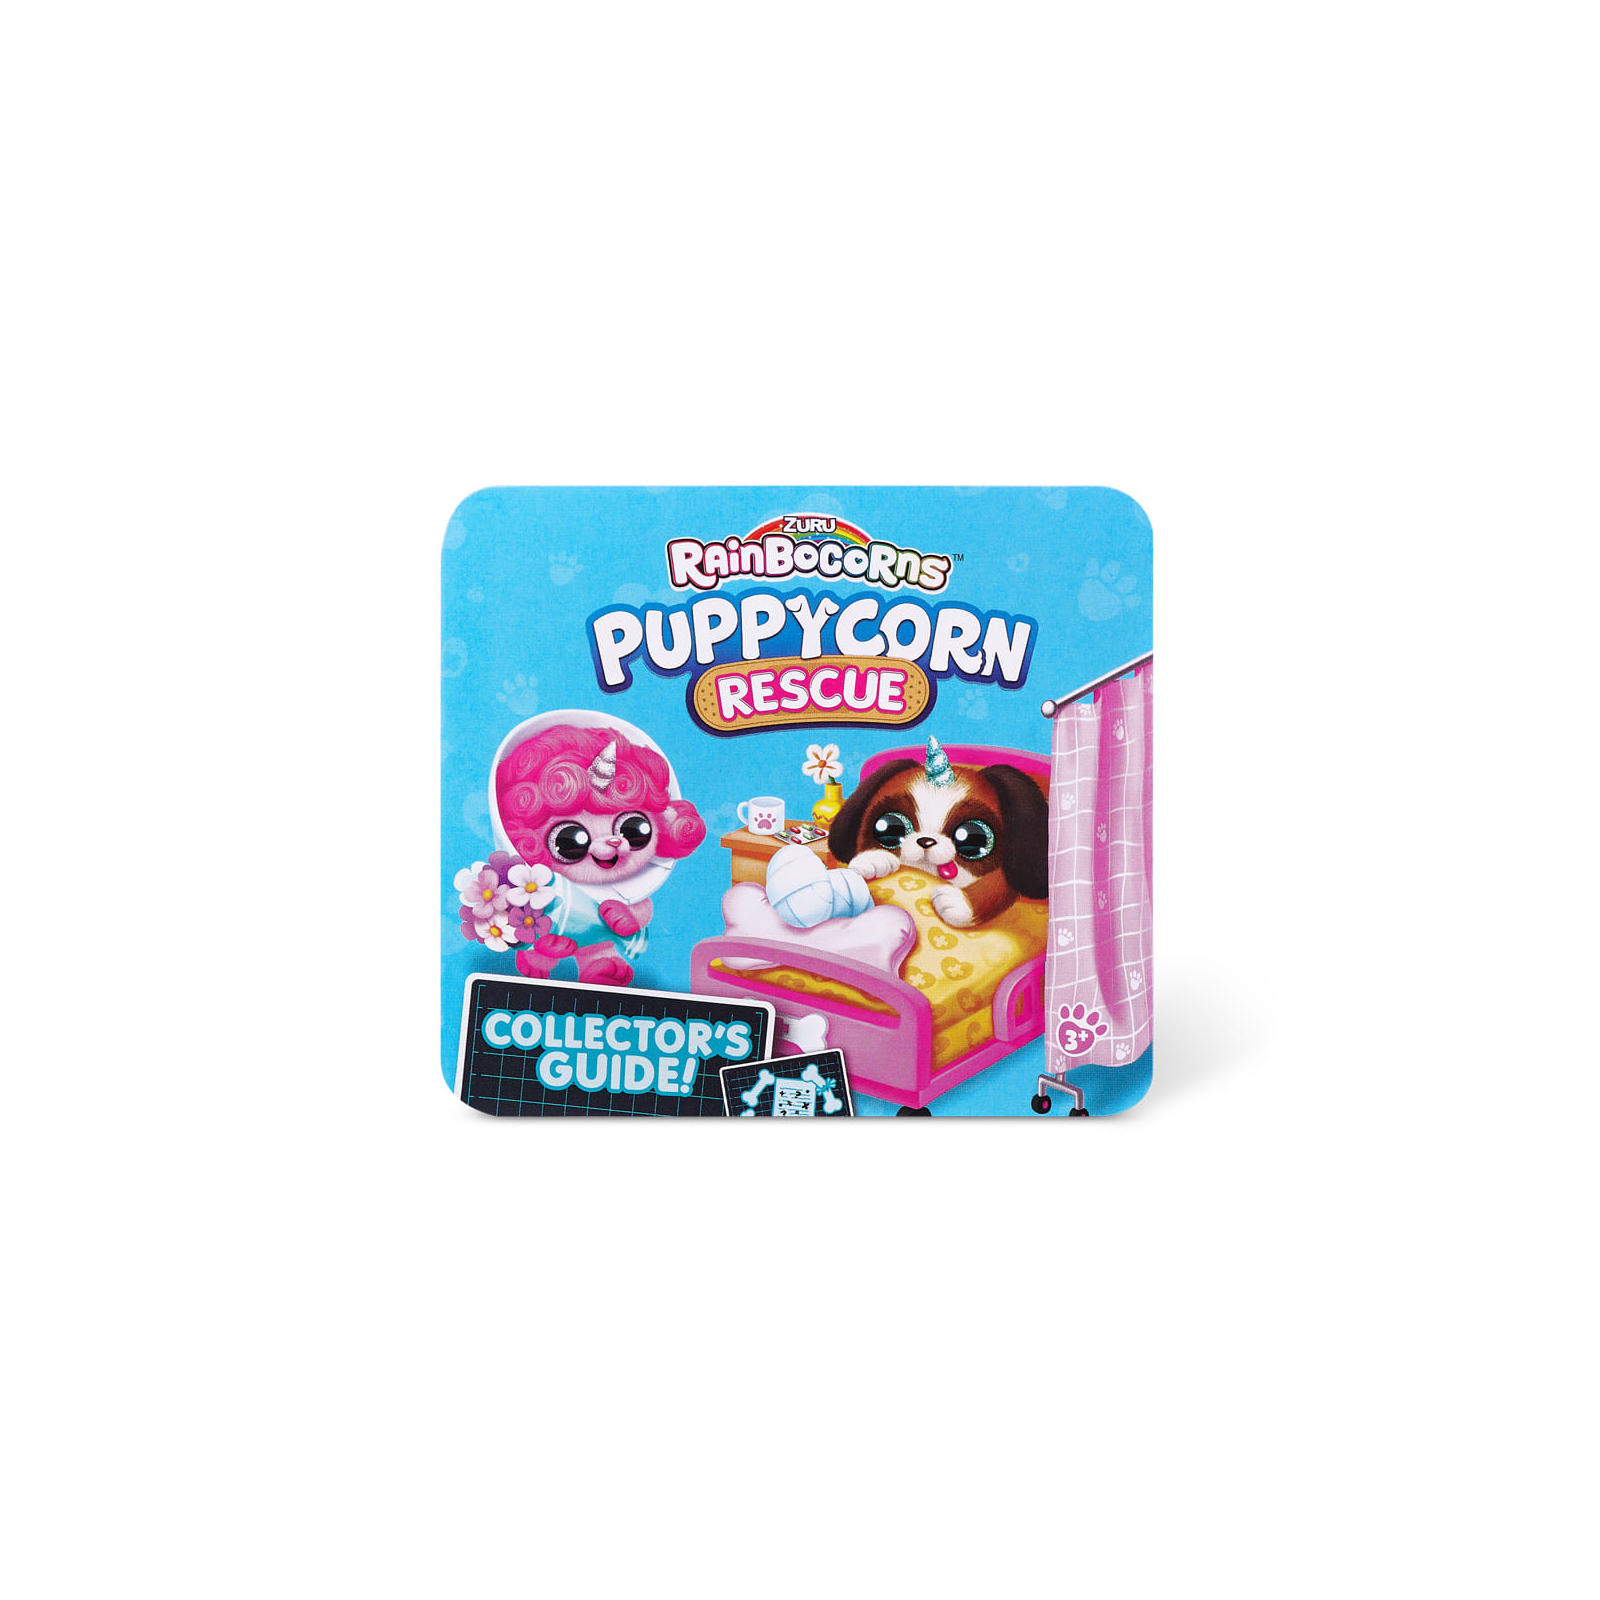 Мягкая игрушка Rainbocorns сюрприз B серия Puppycorn Rescue (9261B) изображение 13